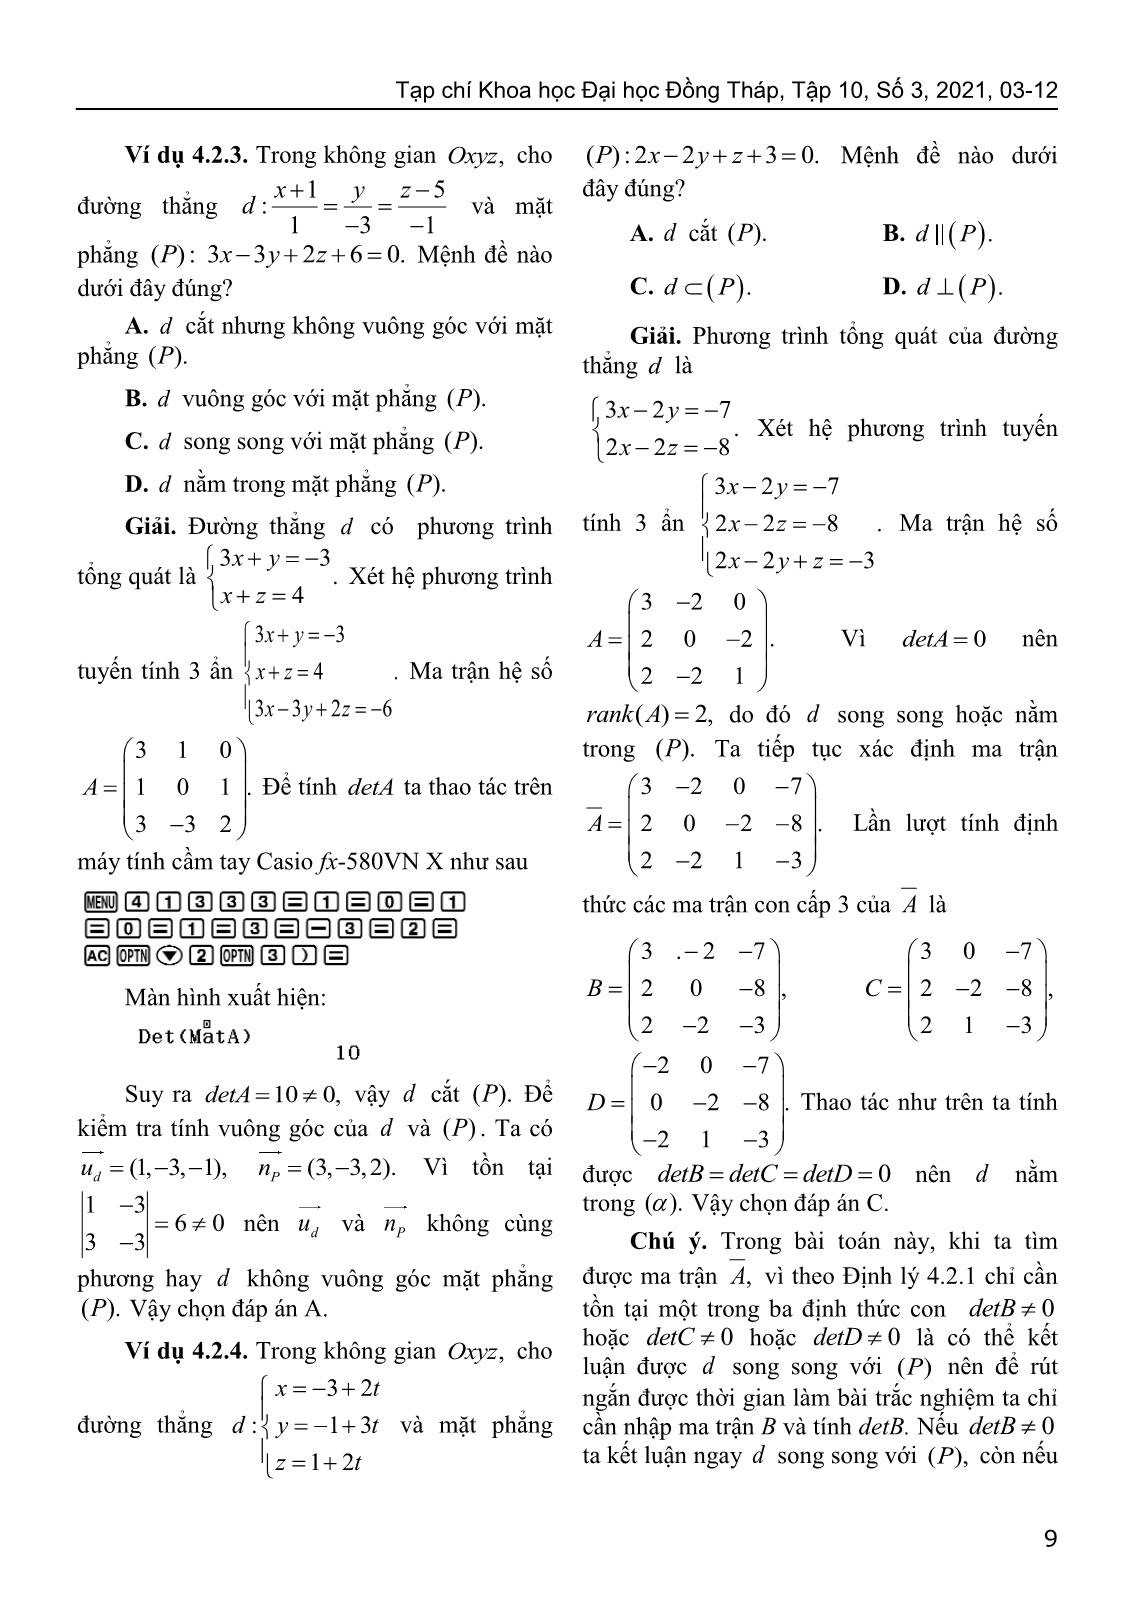 Sử dụng định lý Kronecker-Capelli giải bài toán về vị trí tương đối của hình học giải tích trong không gian trang 7